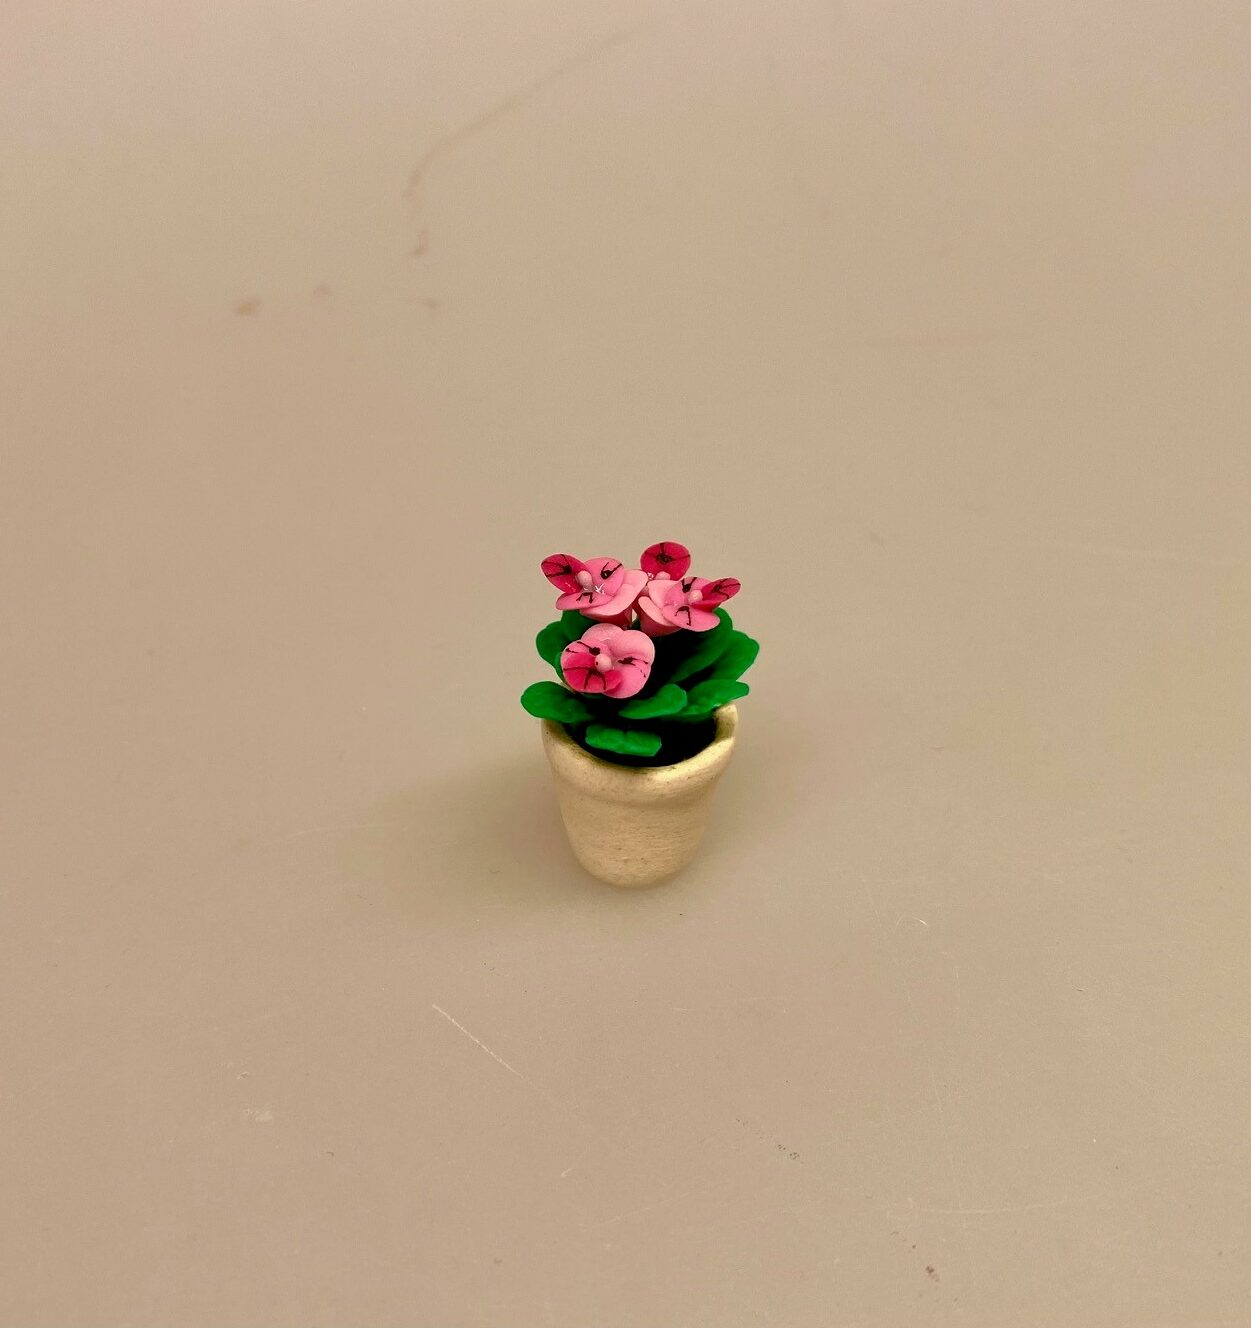 Miniature Potte med stedmoderblomst rosa, 7058B, blomst, Miniature Potte , gartner, landskabsarkitekt, , blomst,, påske, påskeblomster, mini, urtepotte, lerpotte, blomsterpotte, dukkehus, dukkehusting, dukkehustilbehør, 1:12, skala, mini, miniature, miniatyre, miniaturer, sættekasse, sætterkasse, sangskjuler, symbolsk, gavekort, planteskole, haven, have entusiast, havemand, gartner, uddannet, biti, ribe, landskabsarkitekt,